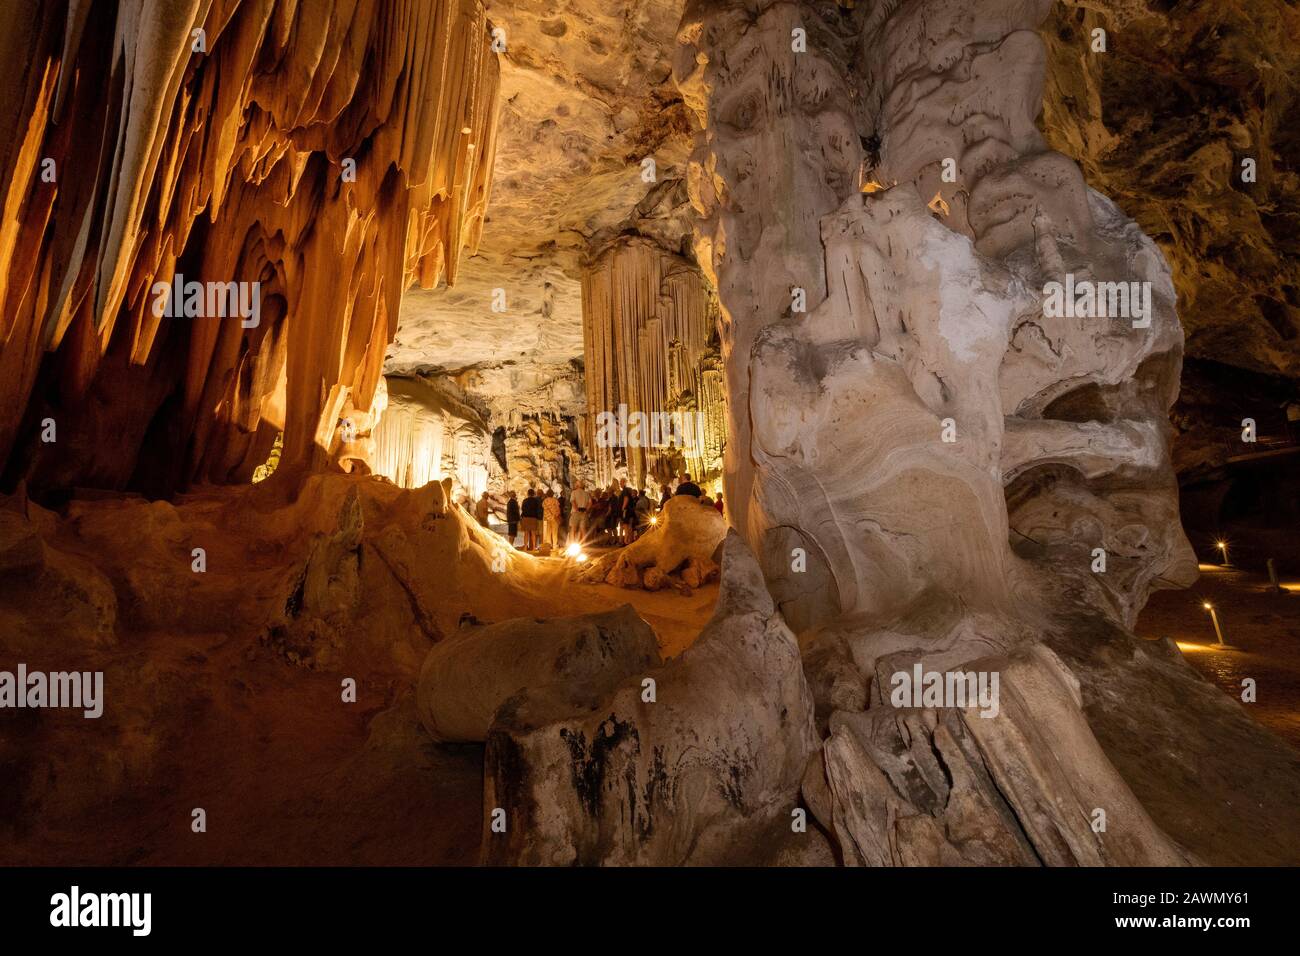 Groupe de touristes visitant les grottes de Cango près d'Oudtshoorn, Province du Cap occidental, Afrique du Sud Banque D'Images